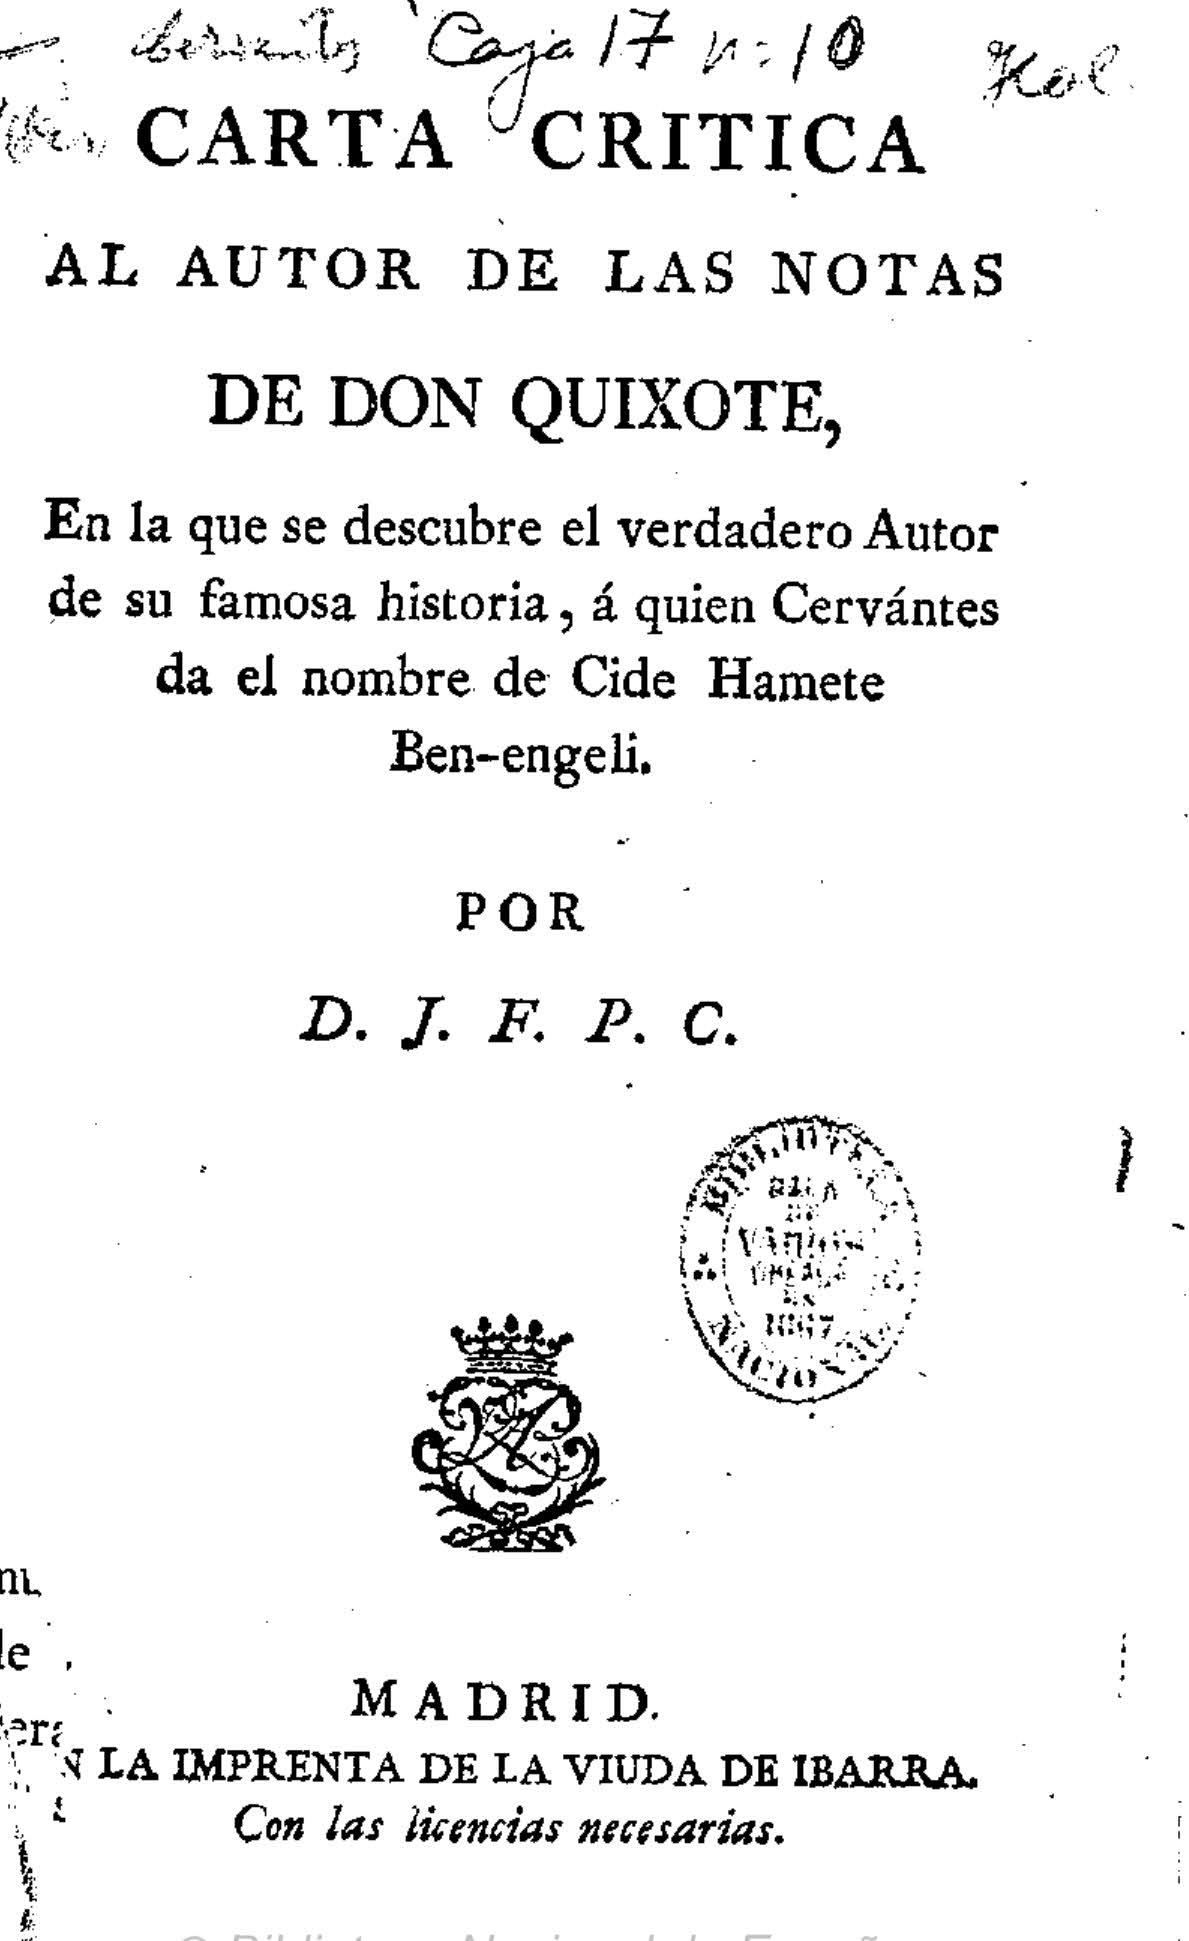 Carta crítica al autor de las notas de Don Quixote. En la que se descubre el verdadero autor de su famosa historia a quien Cervantes da el nombre de Cide Hamete Benengeli